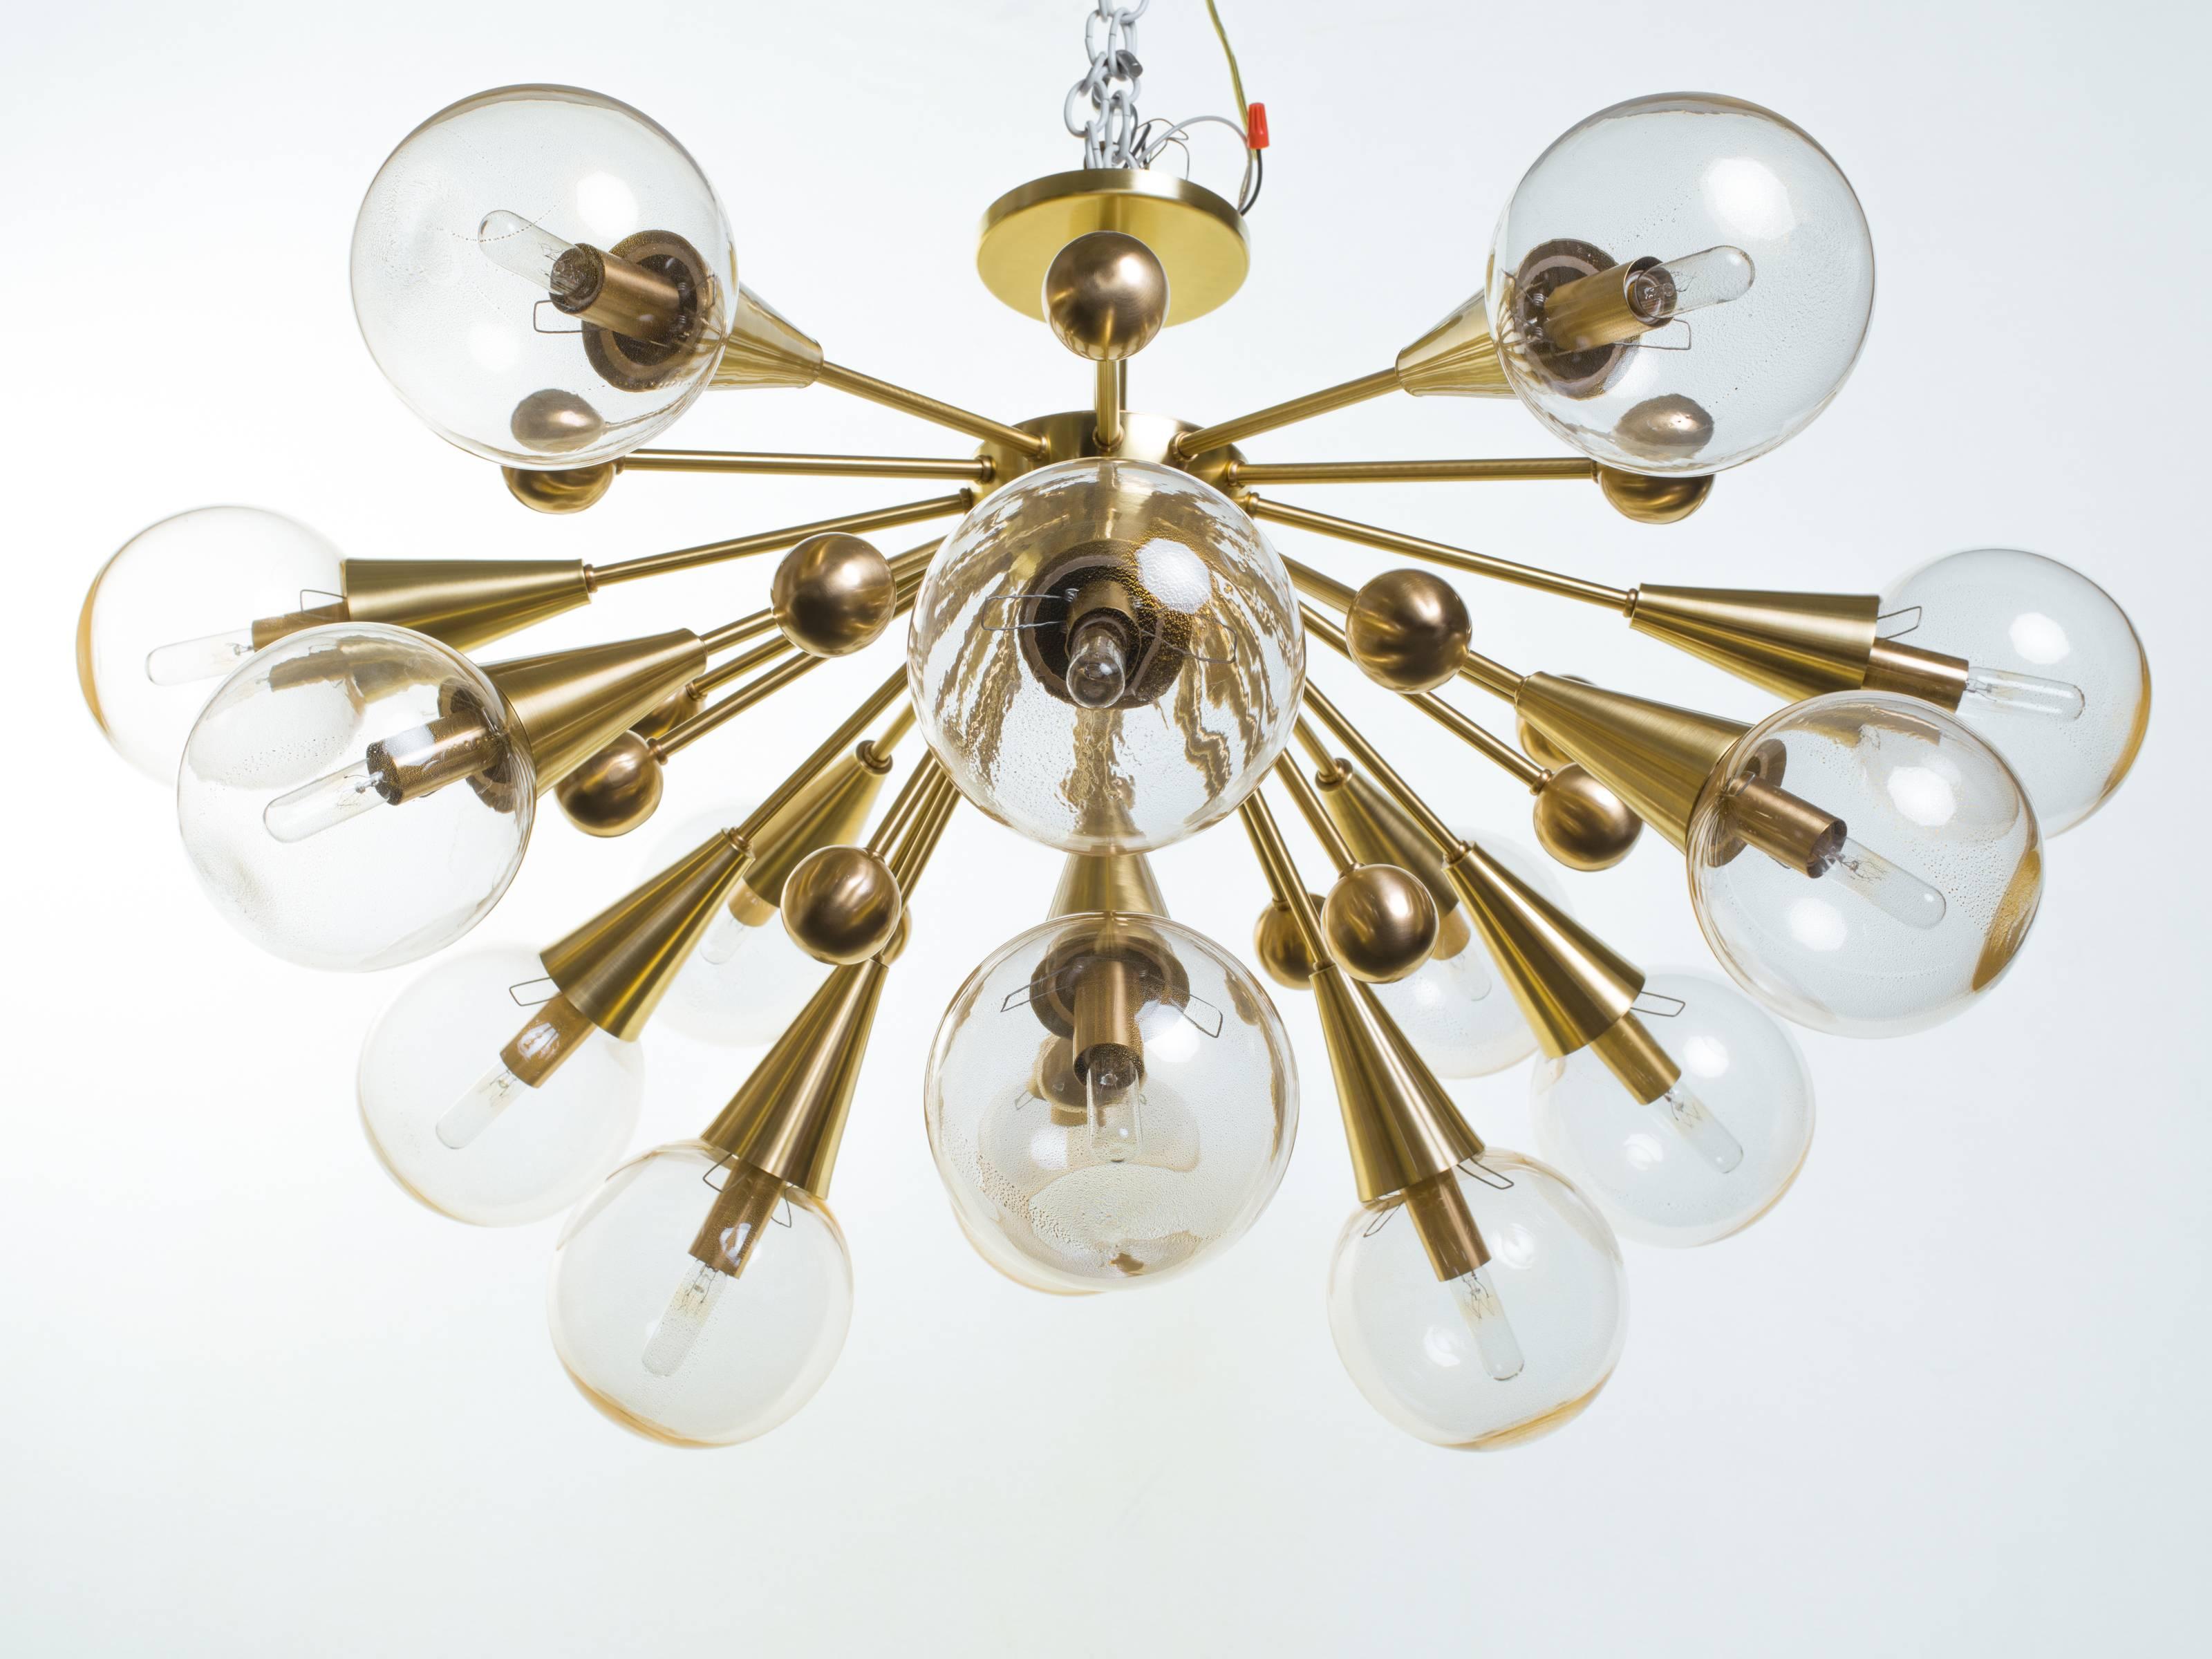 Sputnik-Kronleuchter, bestehend aus 15 Leuchten und 16 dekorativen Messingkugeln, hergestellt von Spark Interior.
Glaskugeln mit 24-karätigem Goldbesatz.
Auf Bestellung gefertigt und in verschiedenen Ausführungen erhältlich.